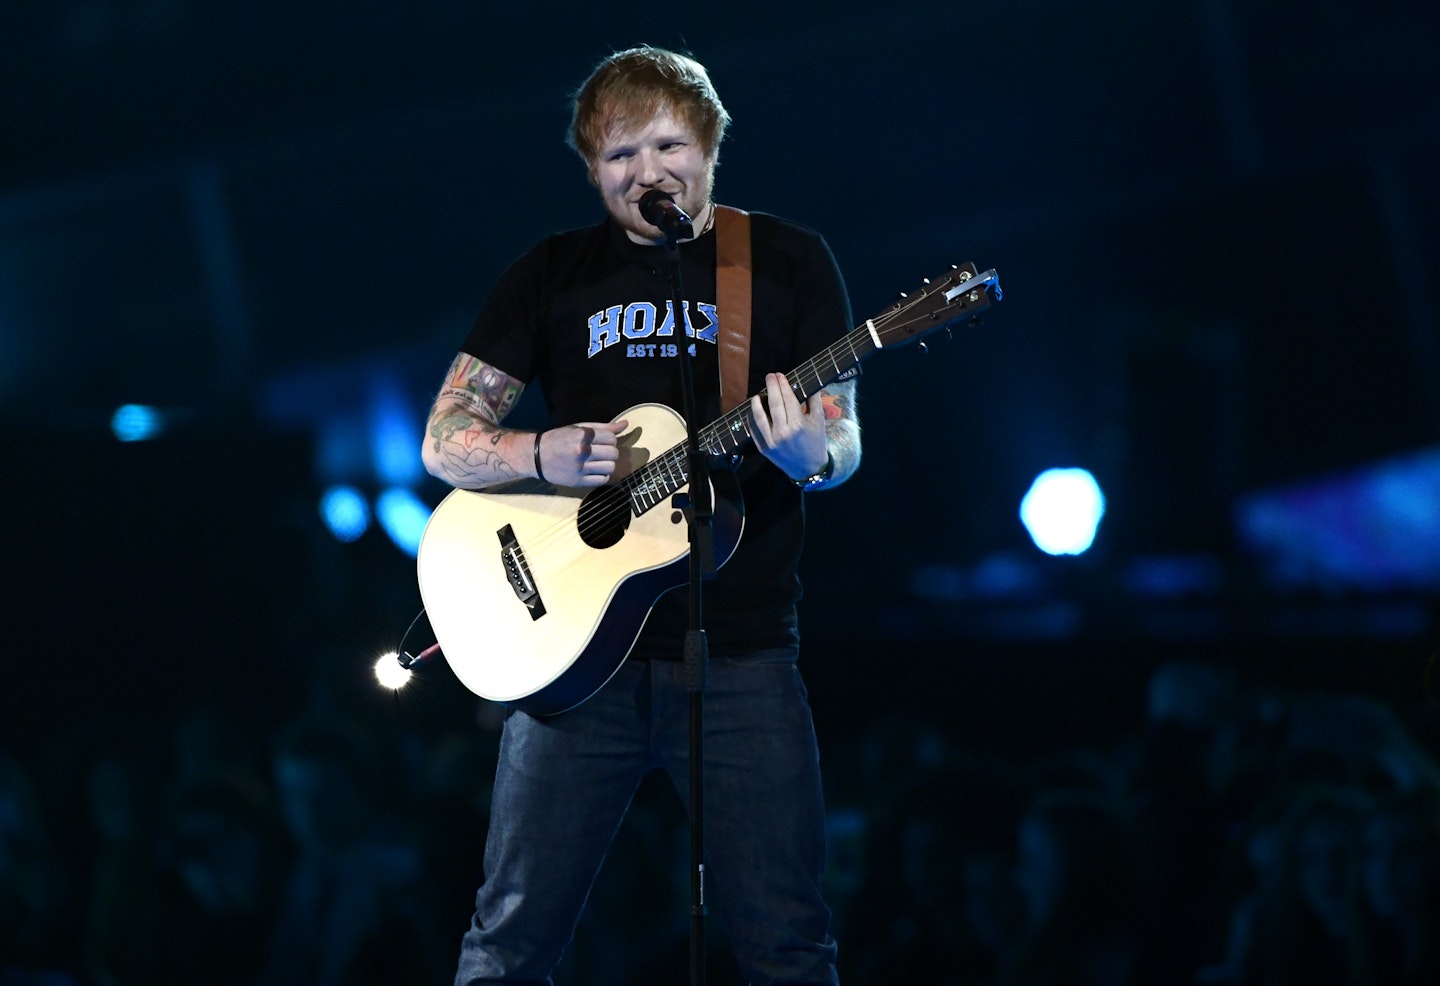 Ed Sheeran performing at the BRIT Awards 2017